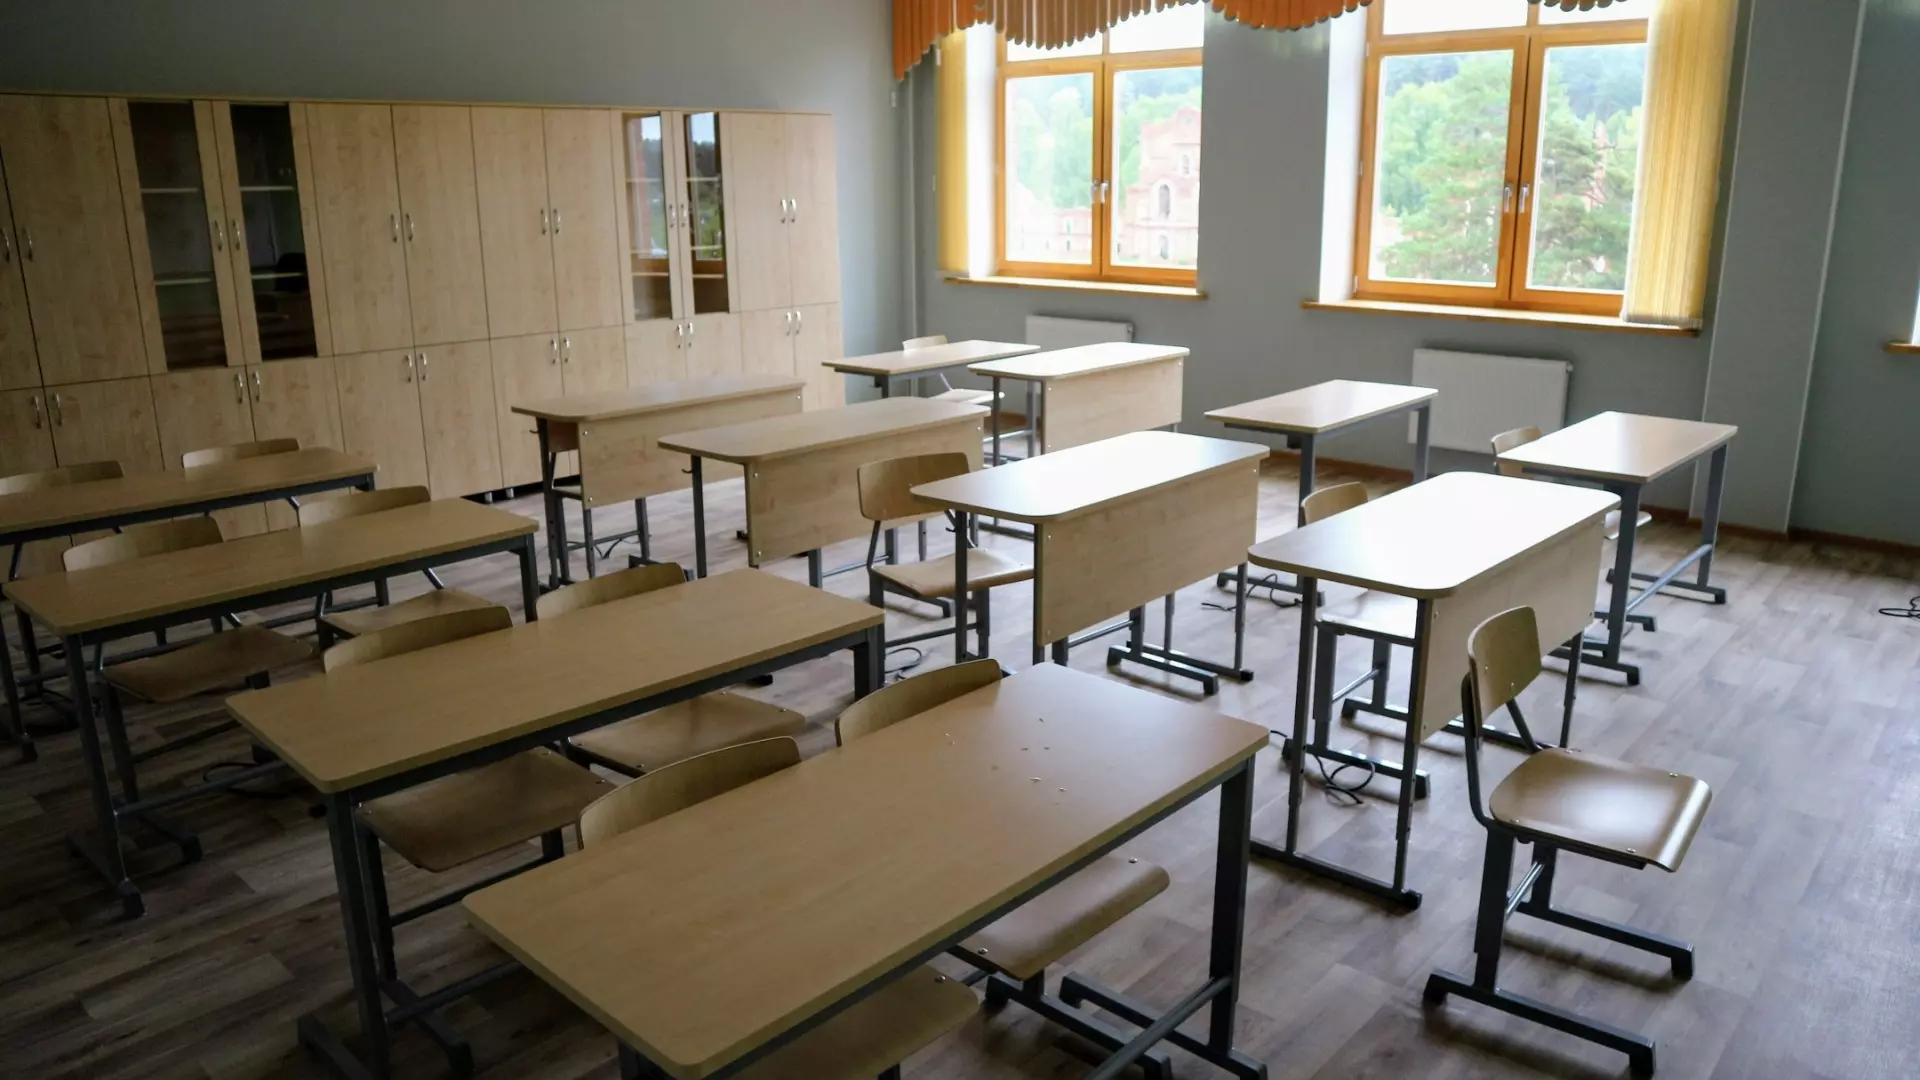 Контракты на капремонт омских школ получили компании со спорным бэкграундом